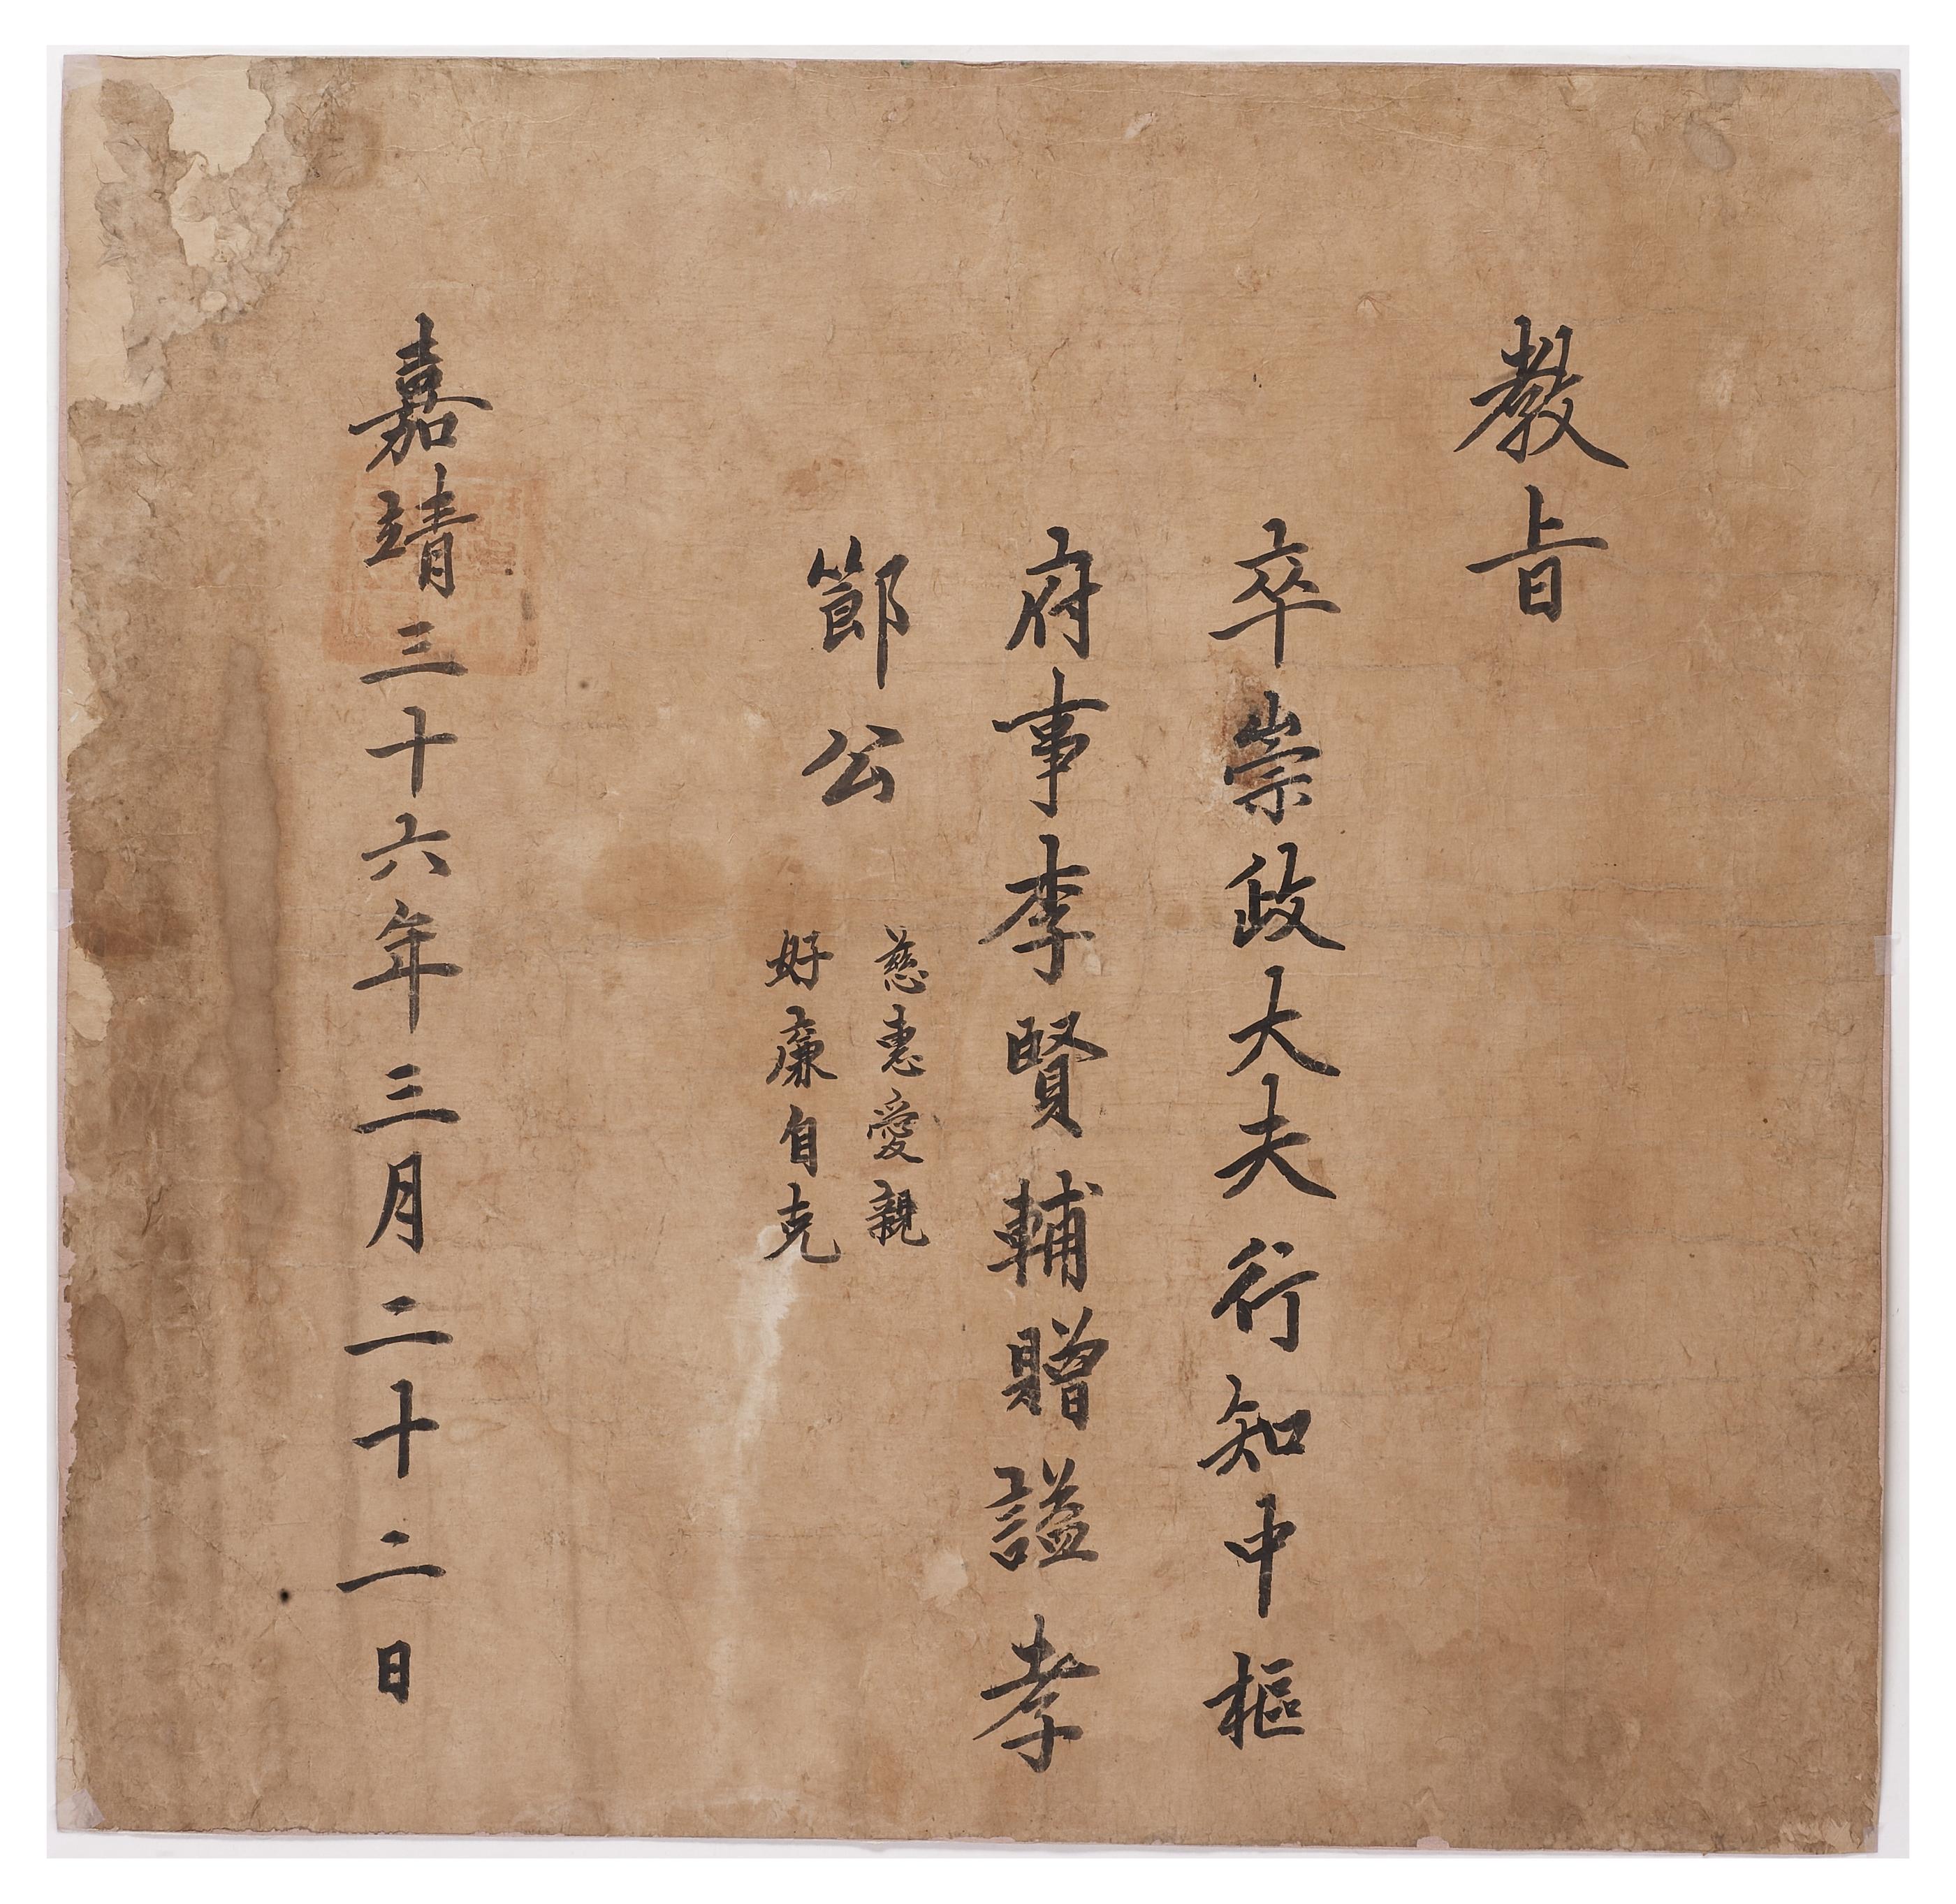 1557년에 숭정대부 행 지중추부사를 지낸 이현보에게 효절의 시호를 내리는 문서